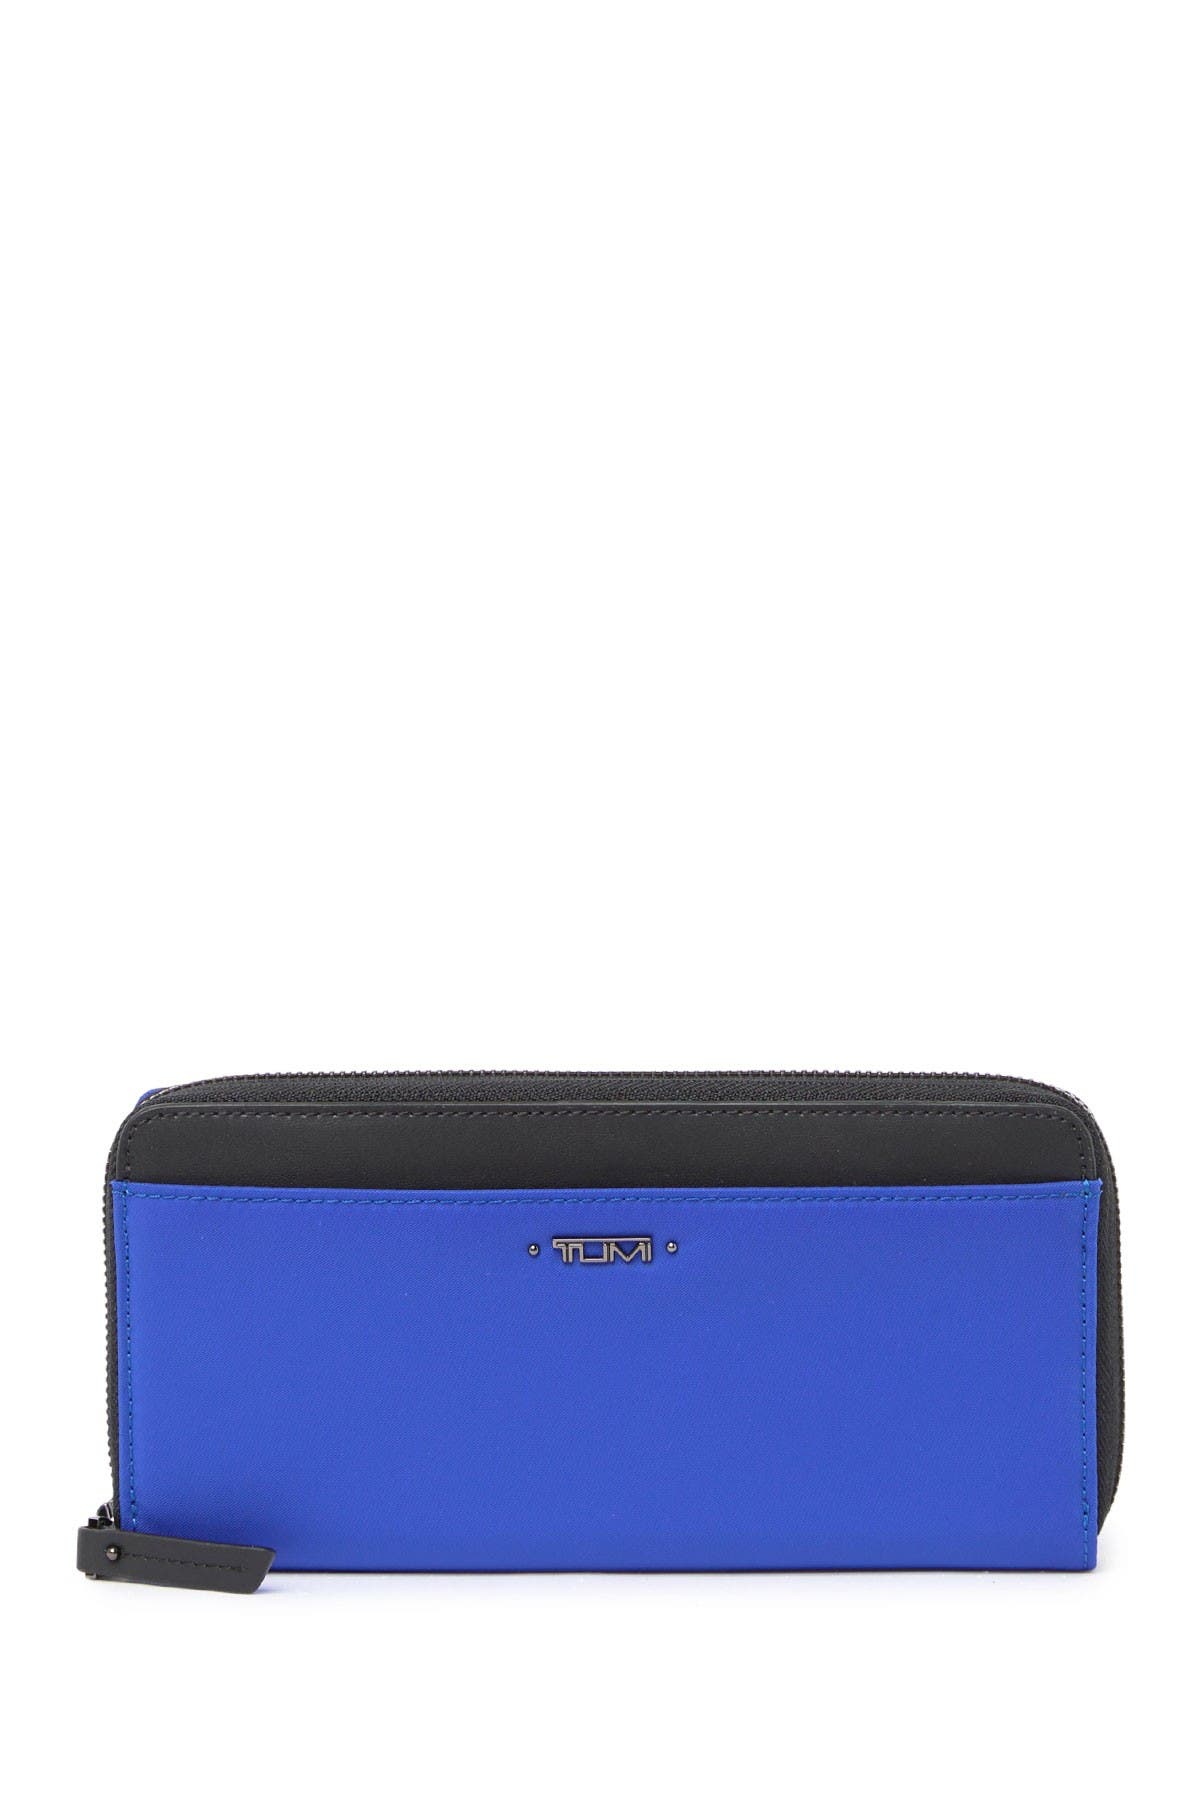 Tumi Zip Around Wallet In Light/pastel Blue1